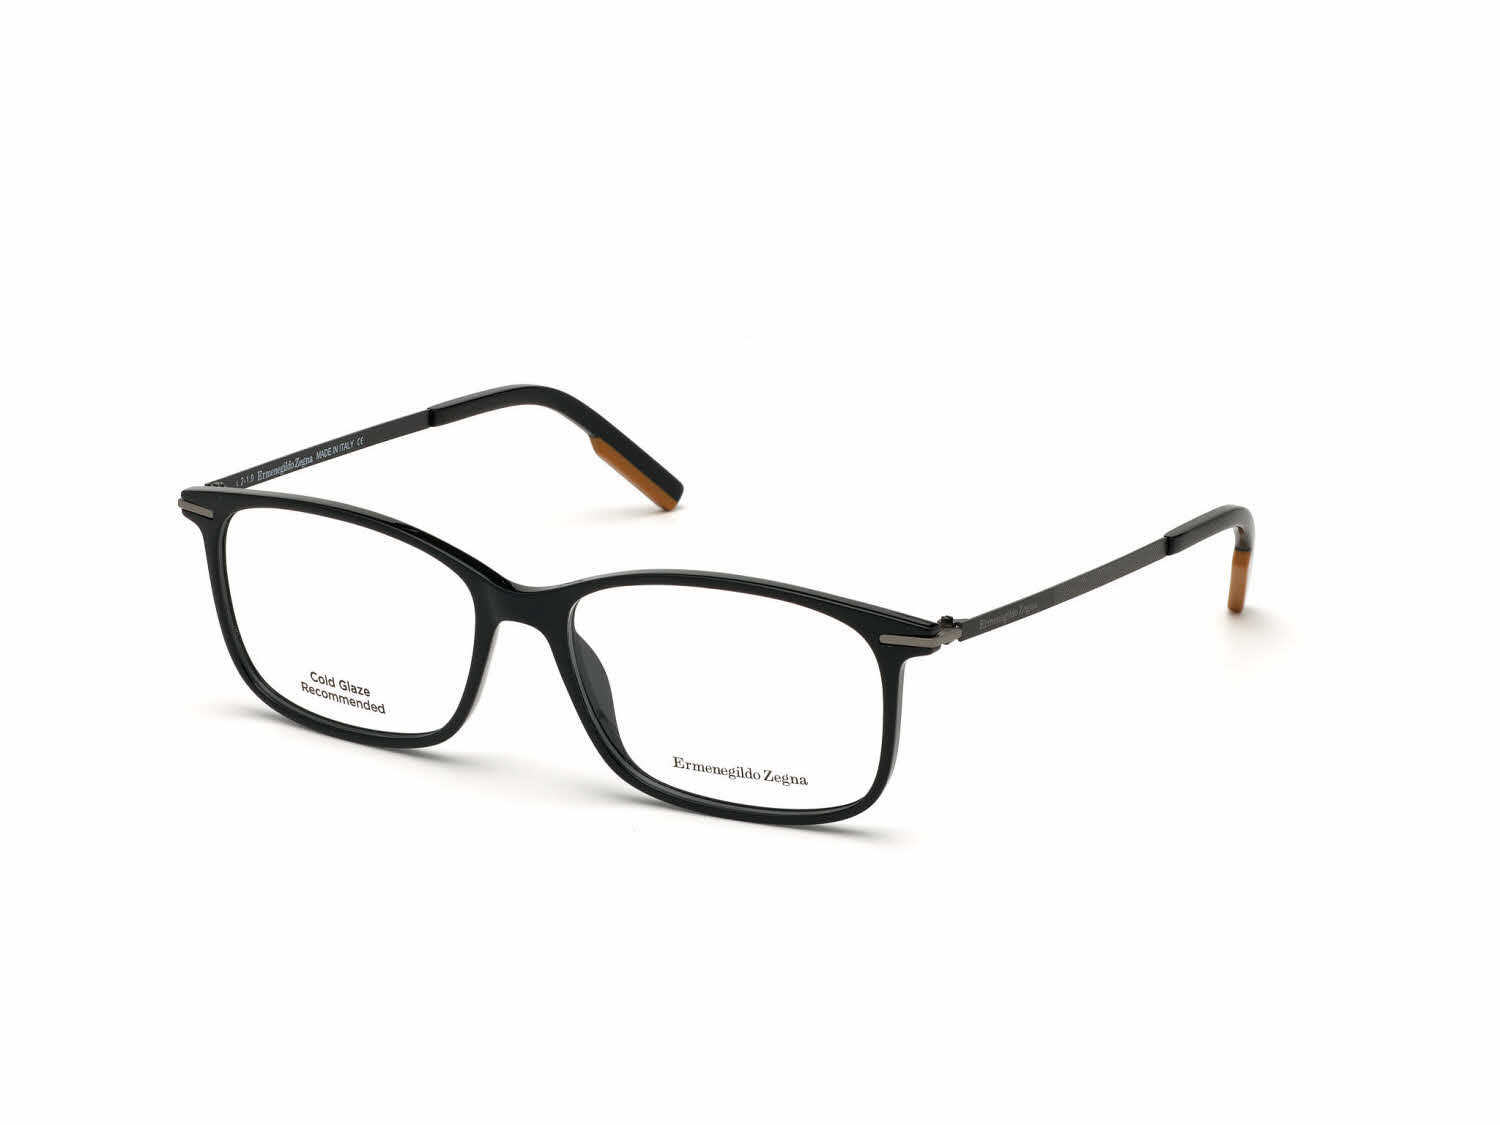 Ermenegildo Zegna EZ5172 Eyeglasses